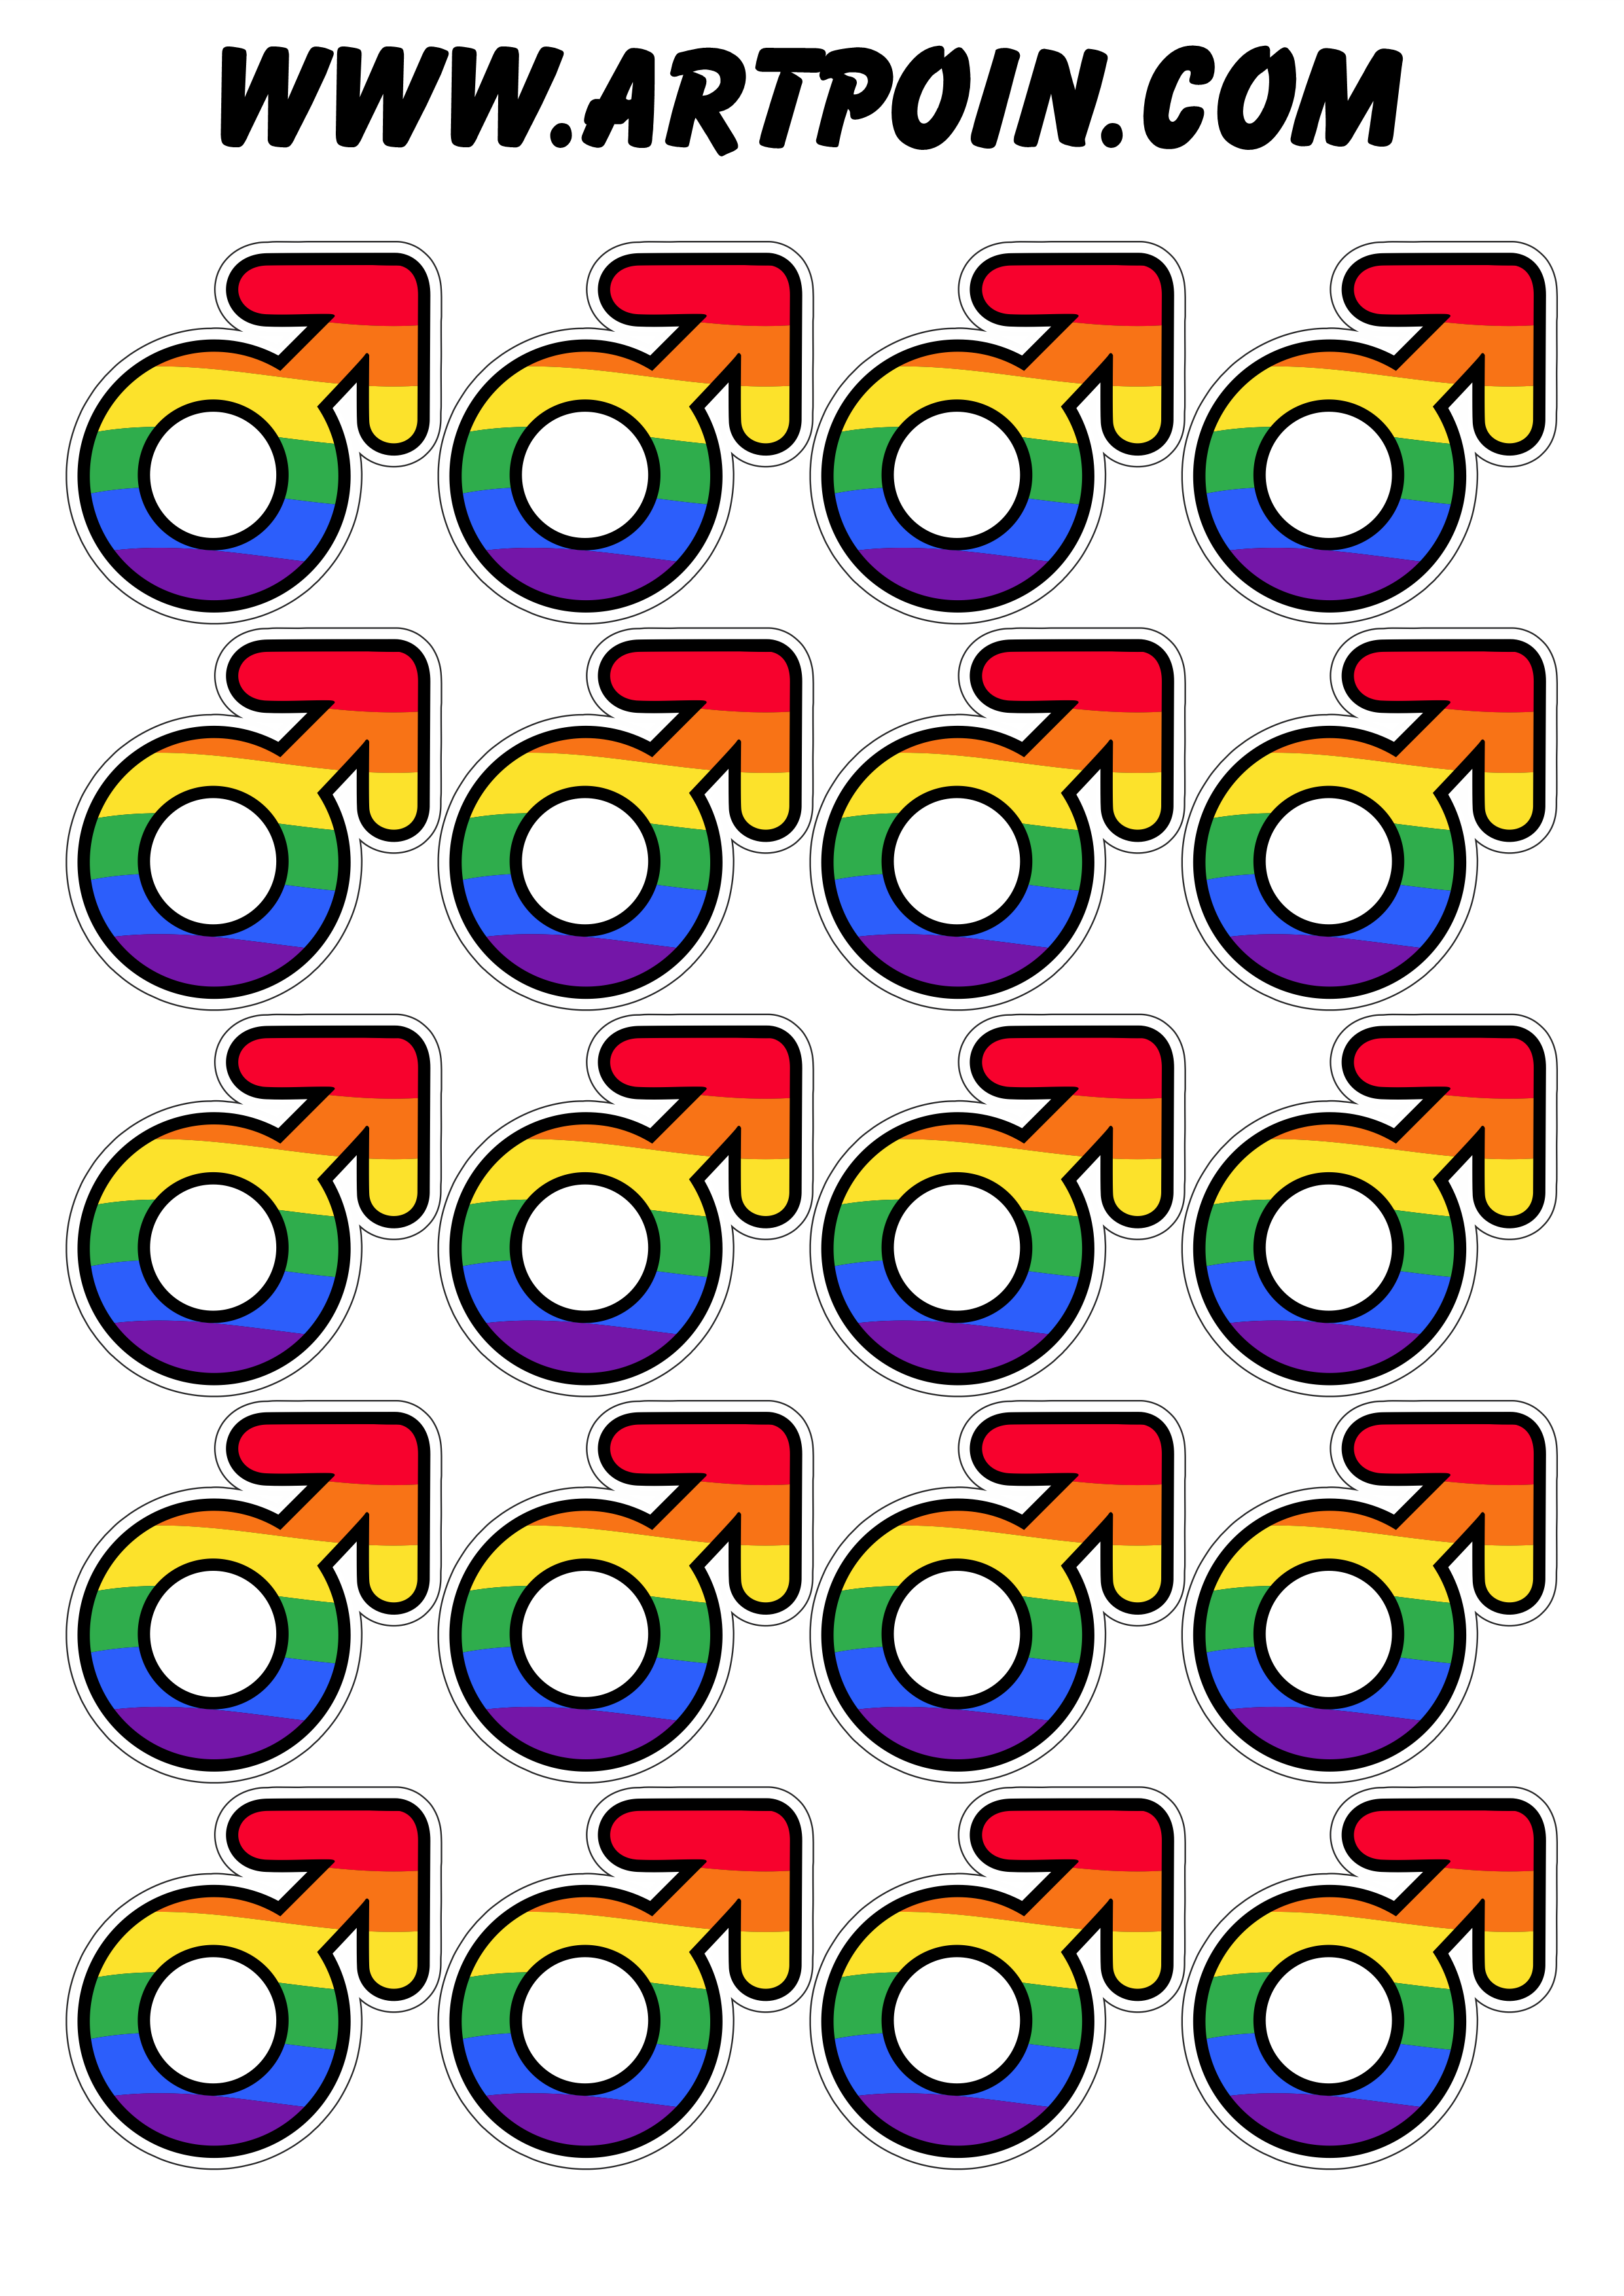 Símbolo masculino bandeira LGBTQIA+ pride month mês da diversidade de gênero 20 imagens png